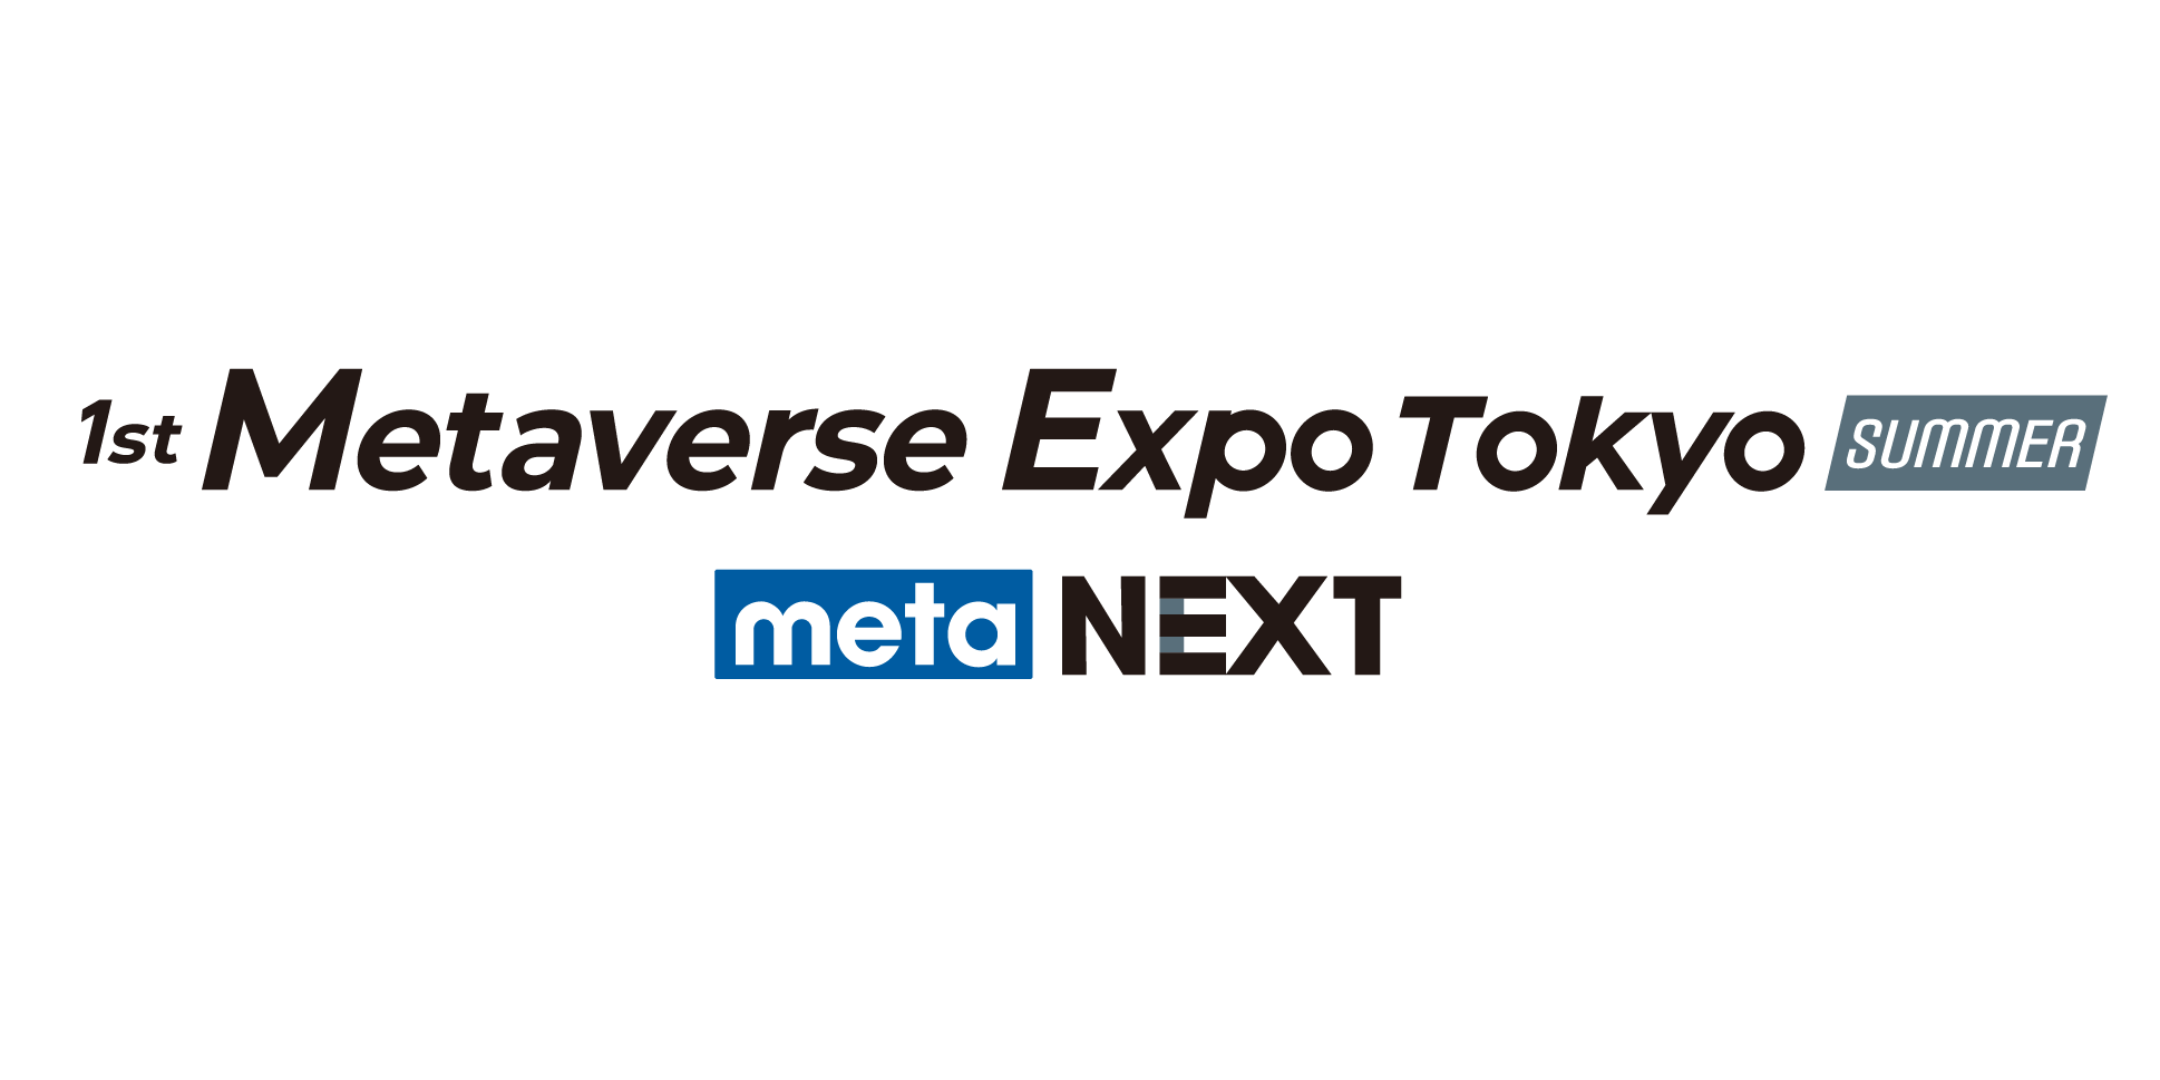 Metaverse Expo Tokyo - meta NEXT (Summer), Tokyo, Japan